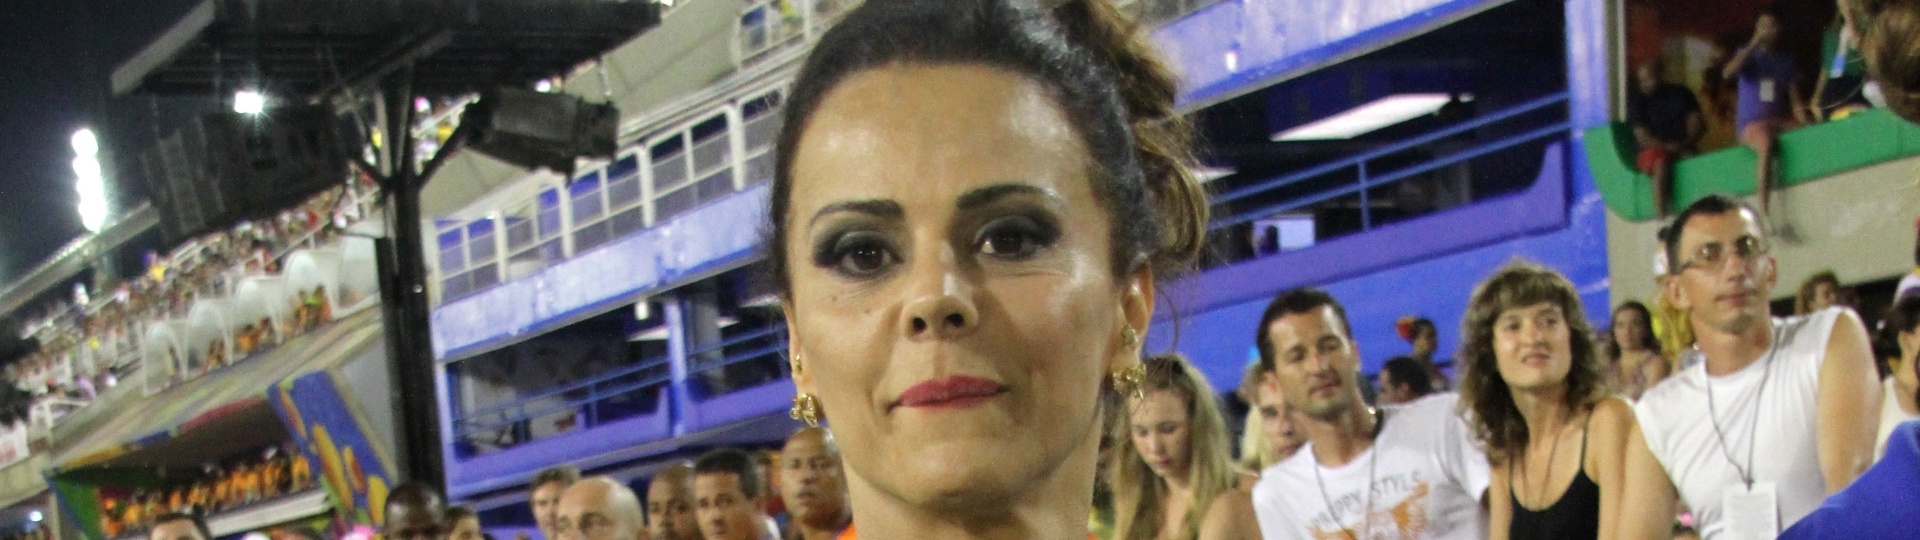 15.fev.2015 - Um dia após desfilar em São Paulo, Viviane Araújo acompanha os desfiles do grupo de acesso do Rio de Janeiro, na Sapucaí